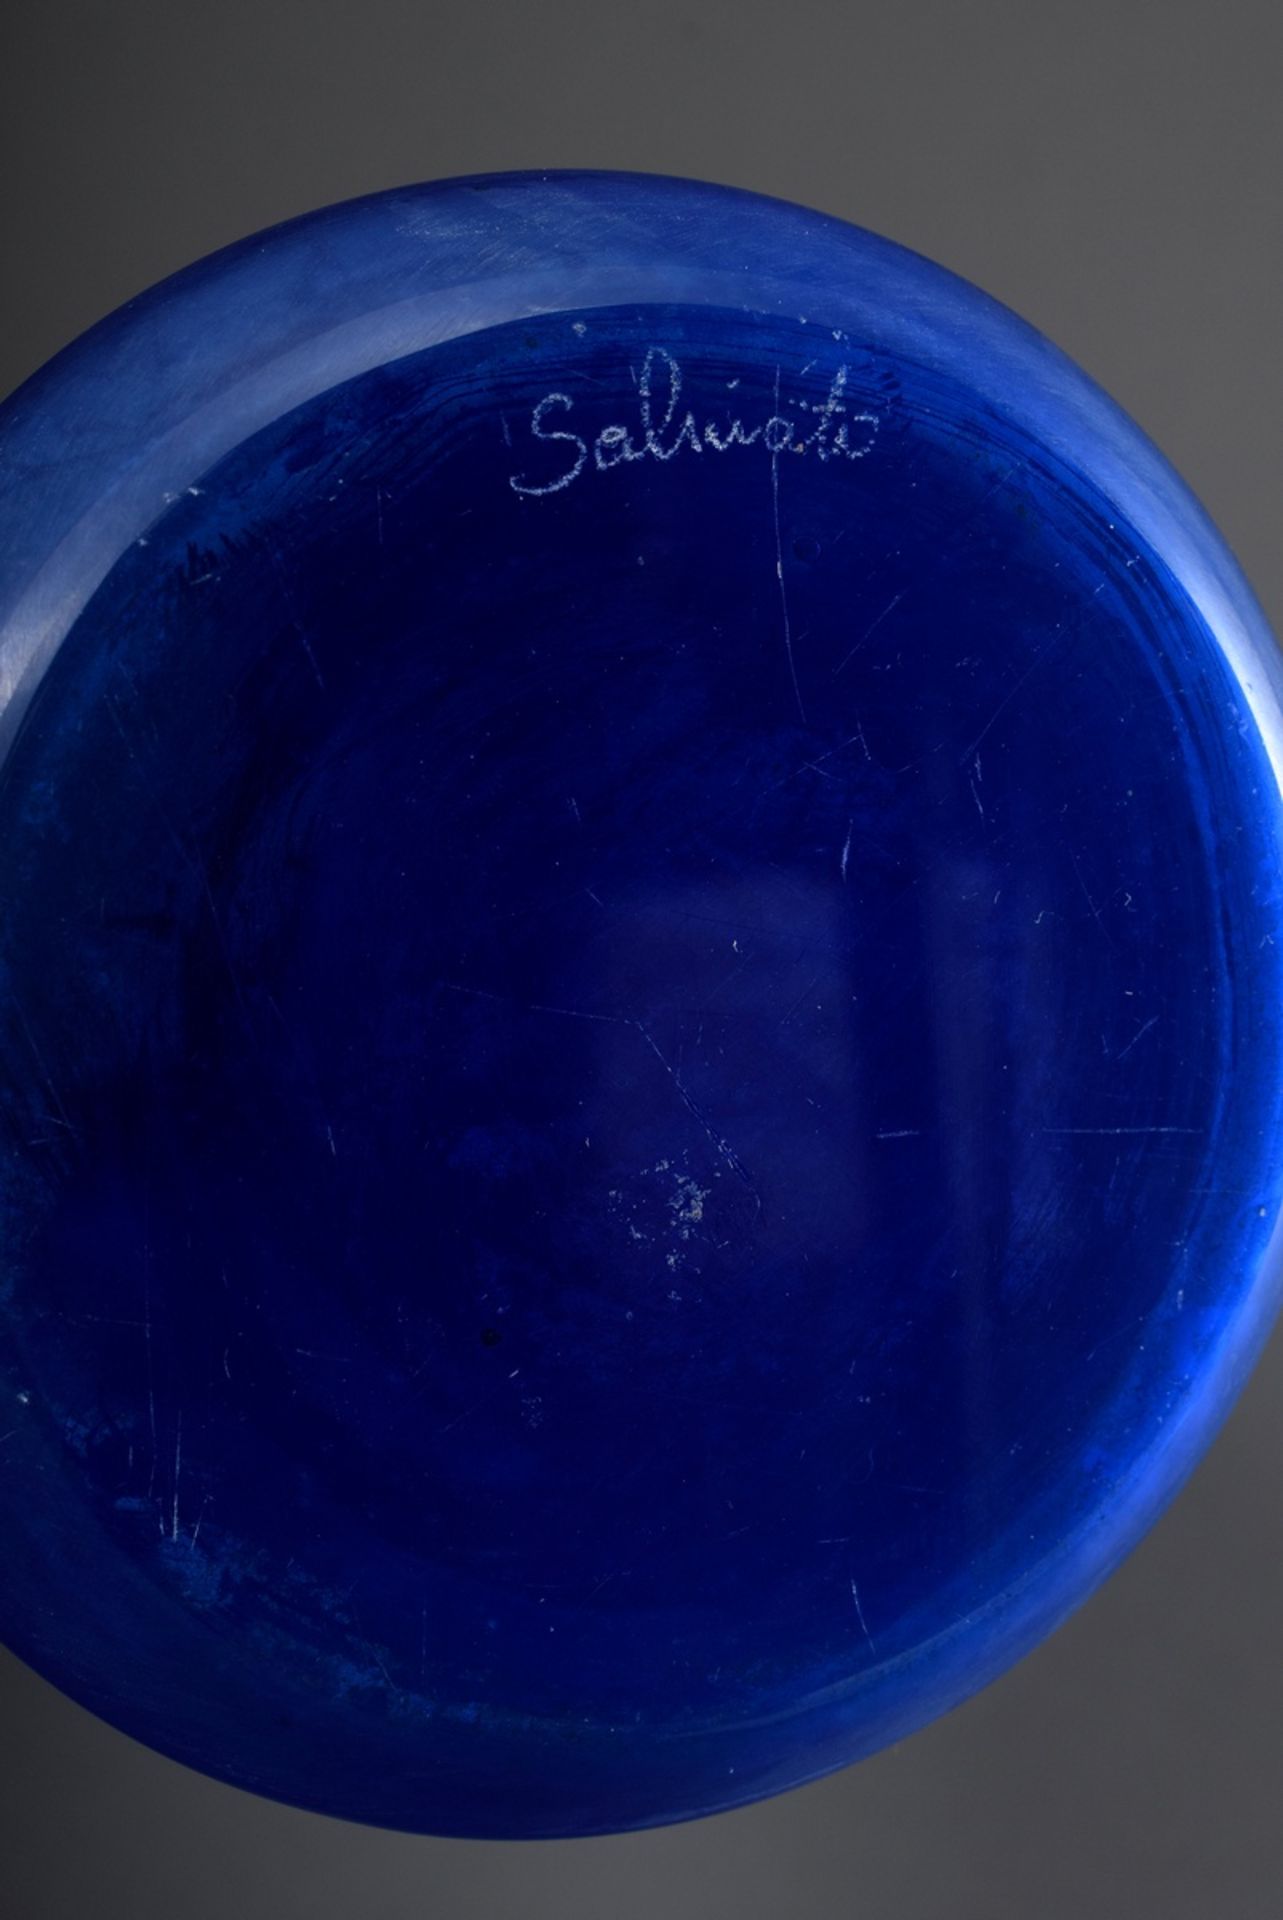 Hohe Salviati Stangenvase aus blauem Glas mit satinierter Oberfläche, am Boden - Bild 3 aus 4